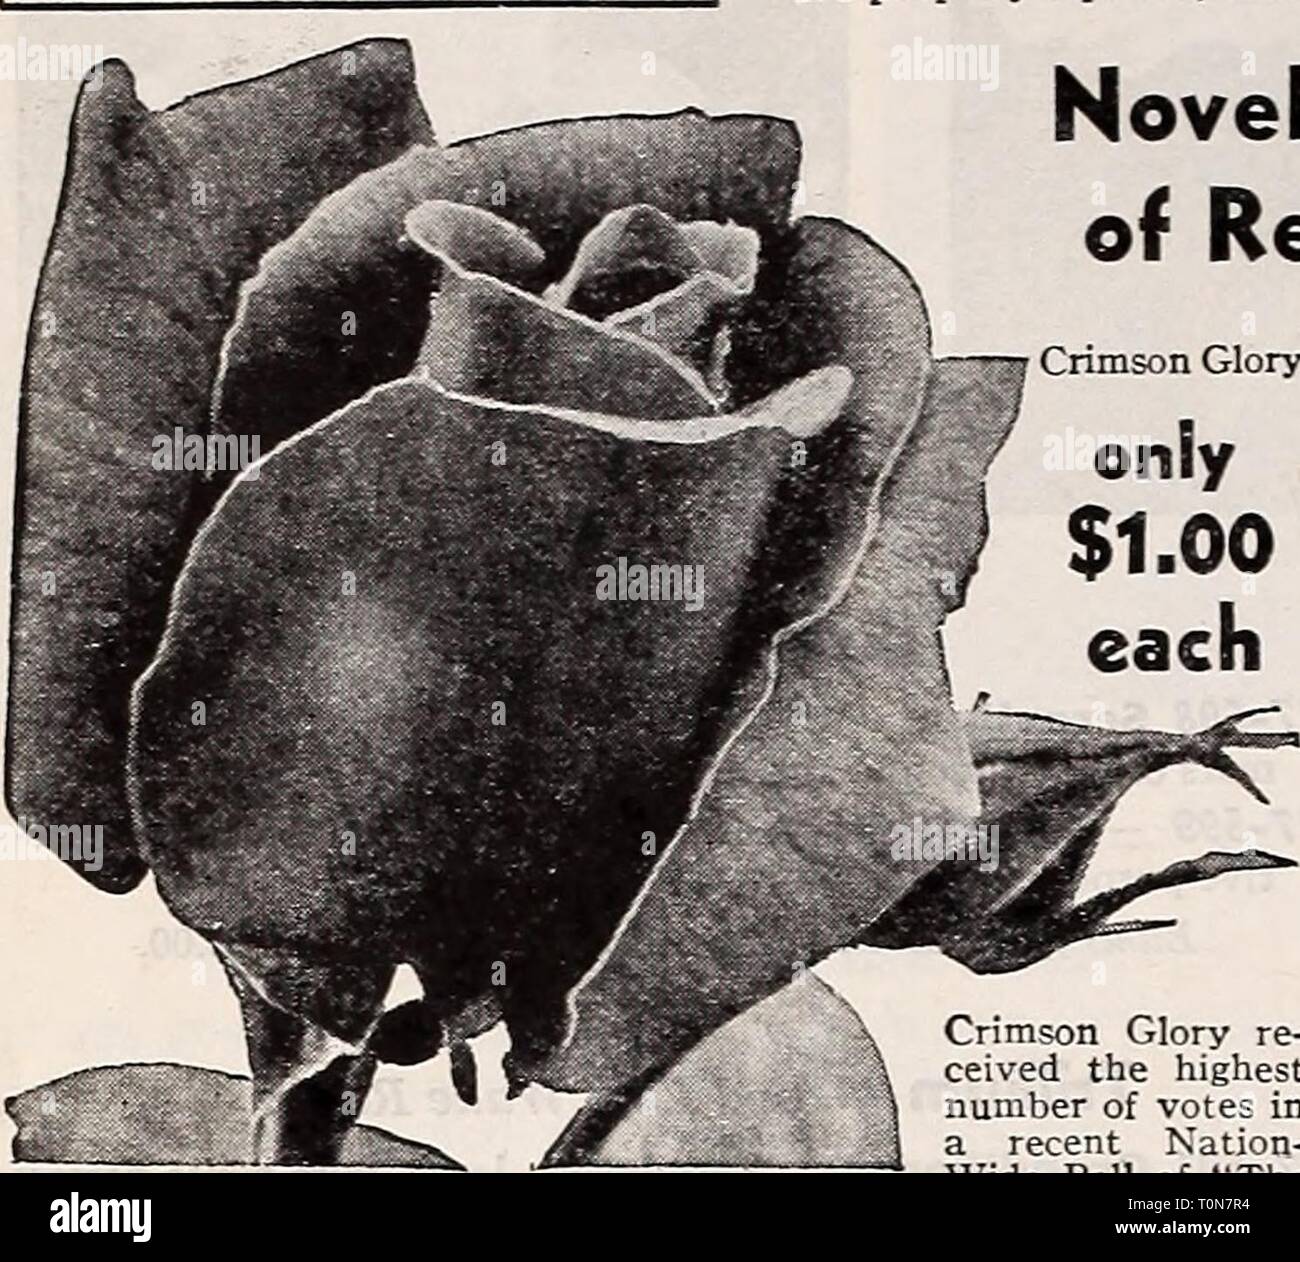 Dreer ist Herbst einpflanzen Leitfaden für Herbst einpflanzen Dreer's Guide  für 1941 dreersautumnplan 1941 henr Jahr: 1941 Rosen per Mail wenn Rosen  per Mail gewünscht sind, beachten Sie bitte Ihre Überweisung 10 % % % % % %  % % (